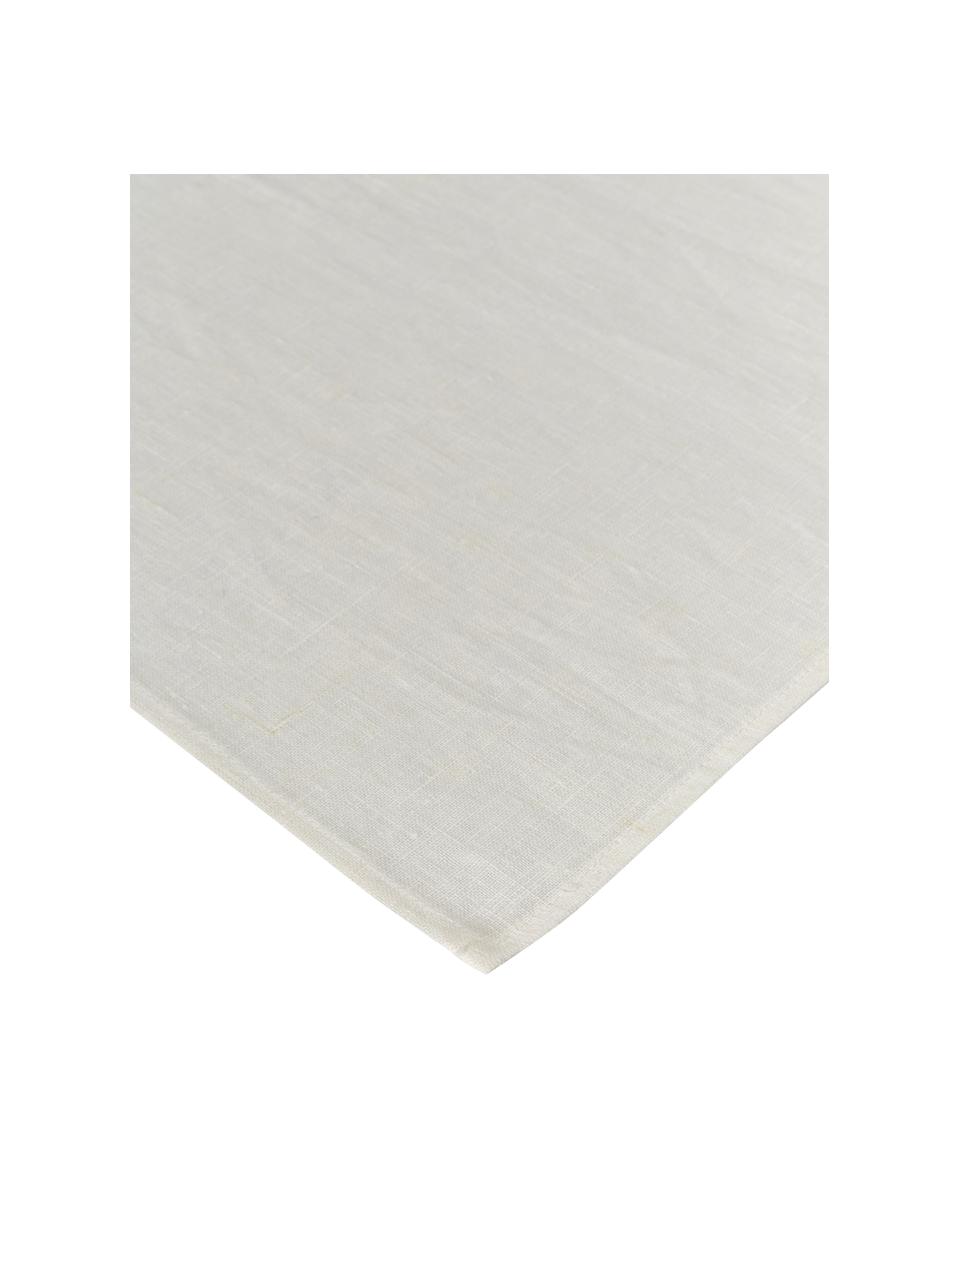 Leinen-Geschirrtuch Heddie, 100% Leinen, Weiß, B 50 x L 70 cm